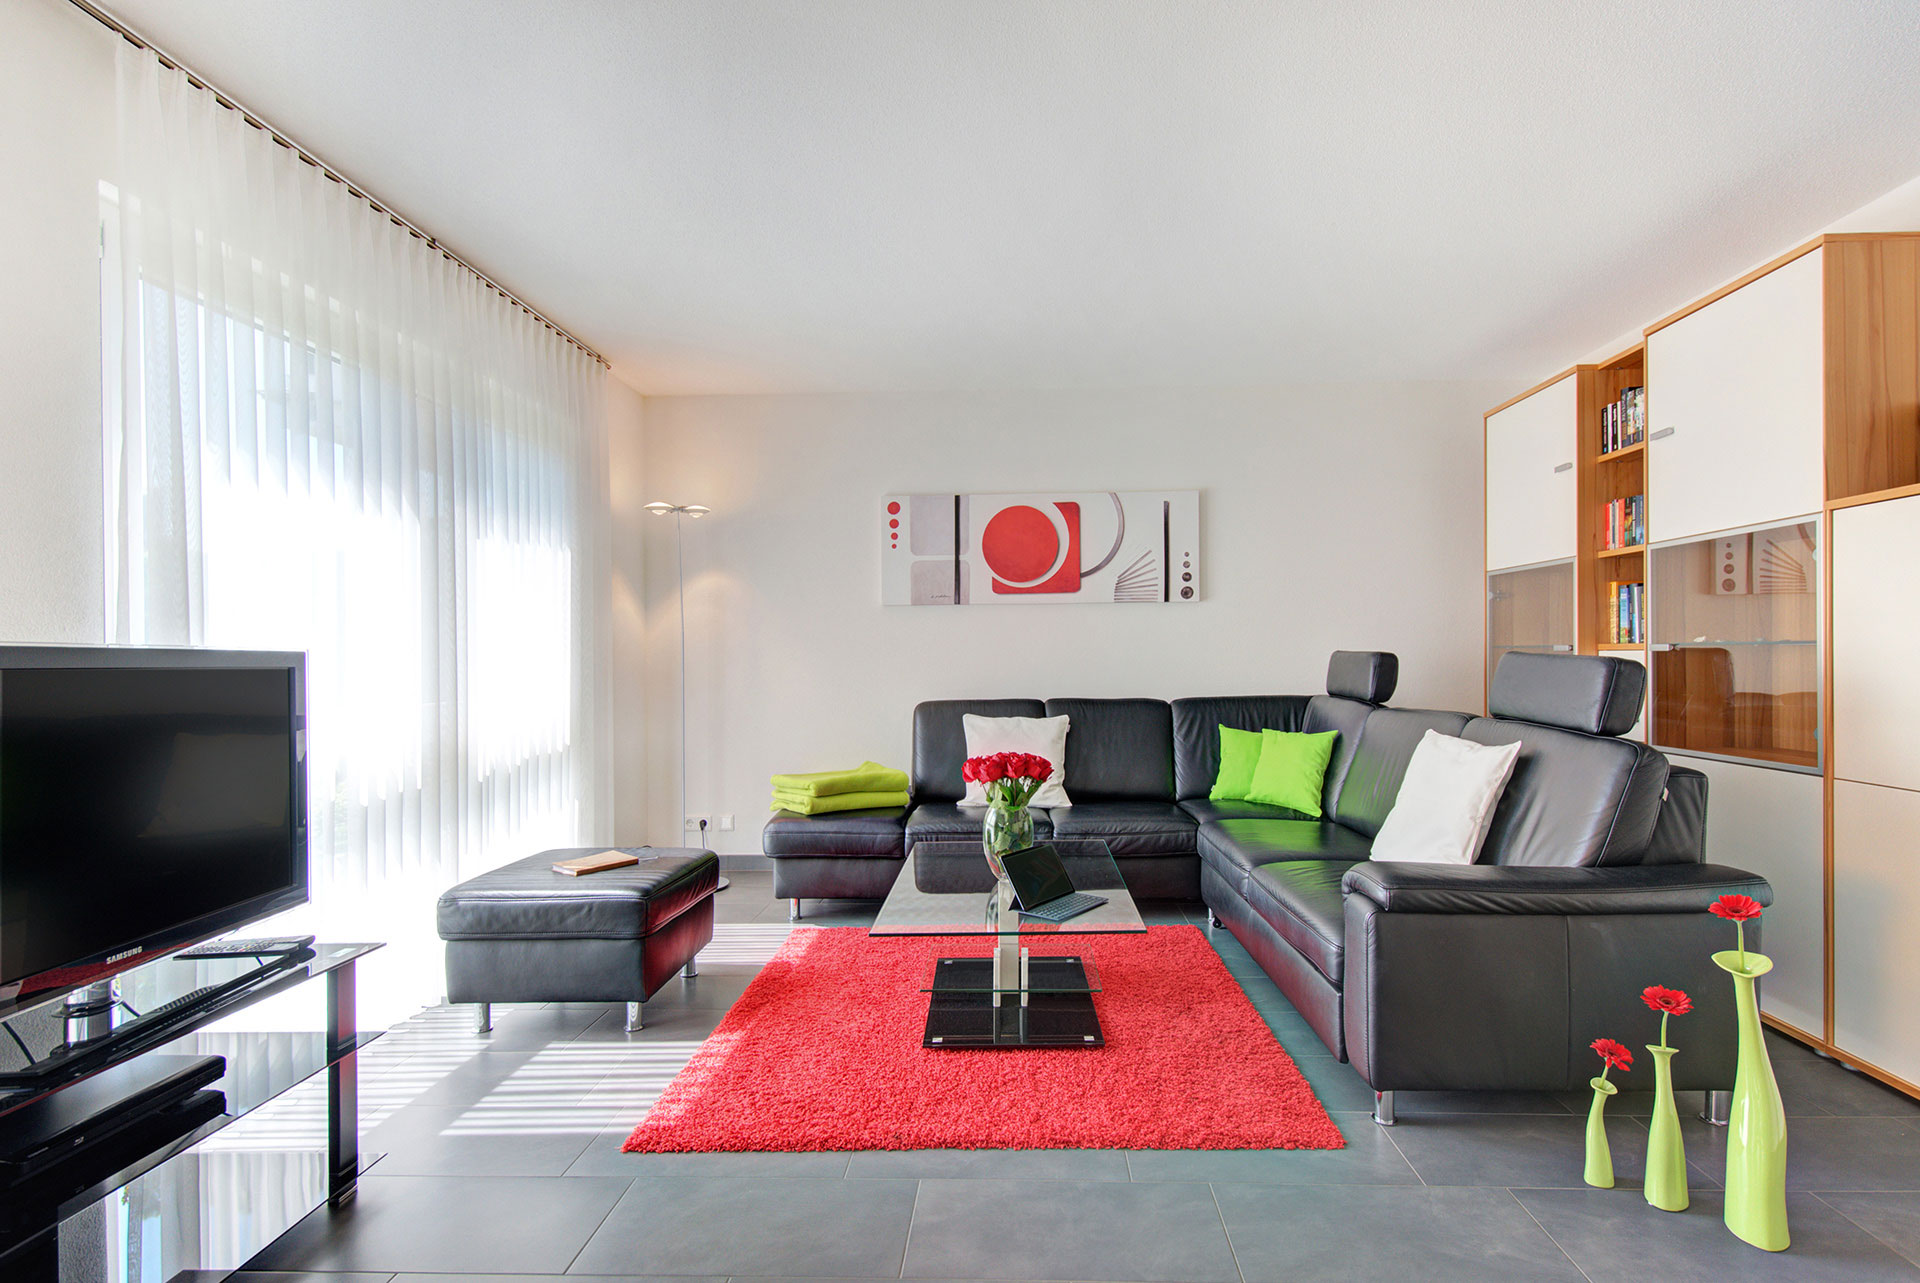 foto ferienwohnung wohnraum frontal mit schwarzem sofa roter teppich roter rosenstrauss